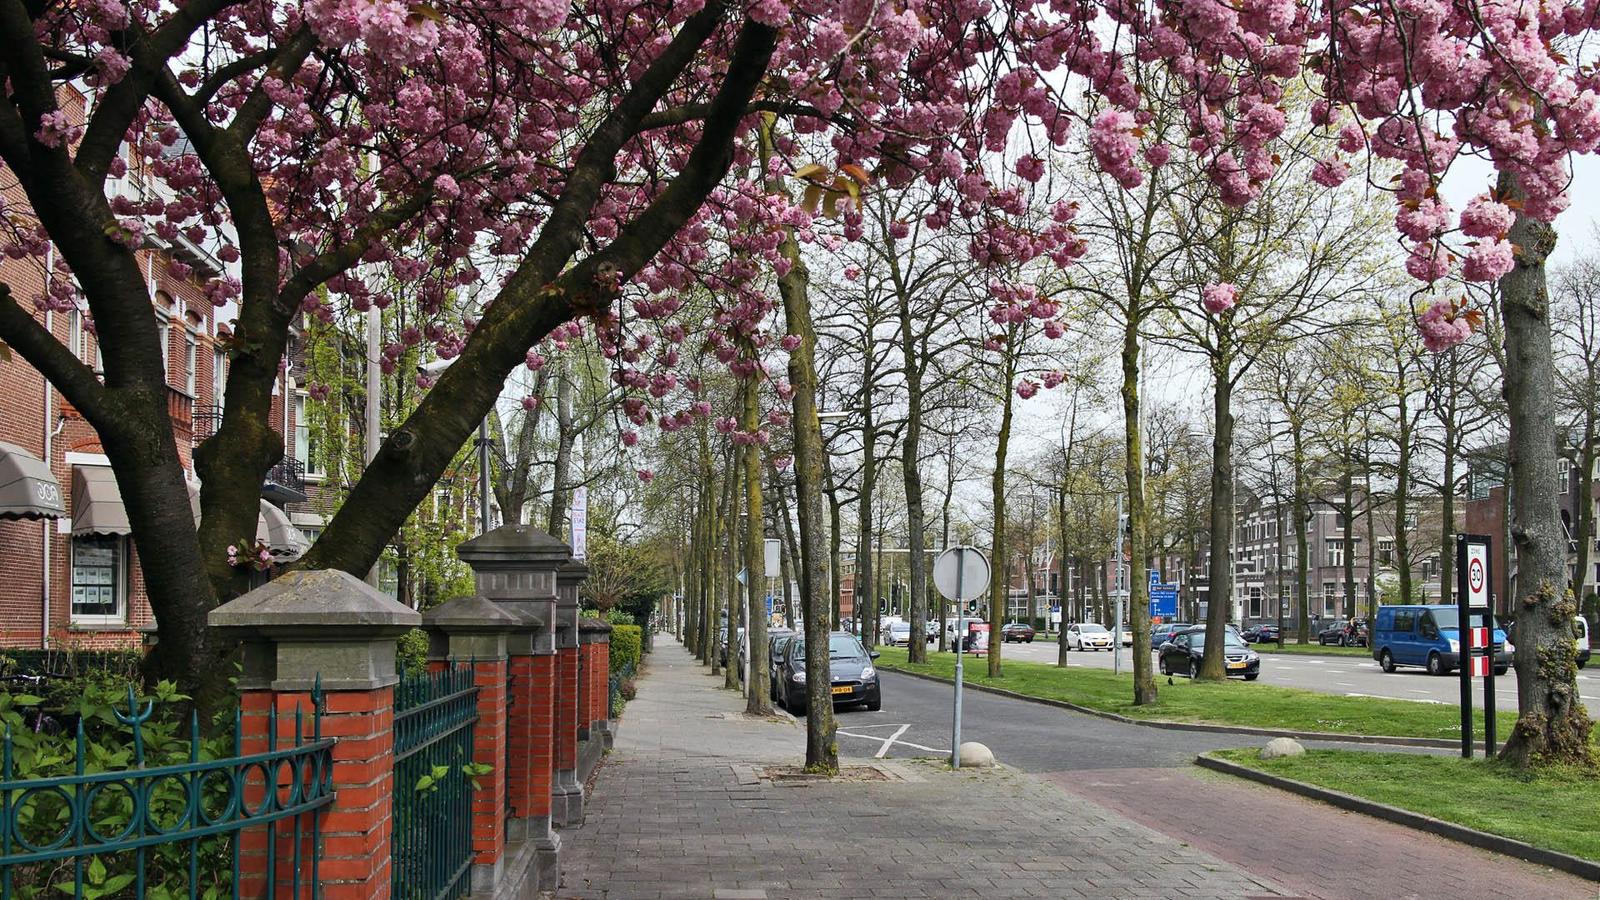 Неймеген, Нидерланды. Nijmegen, Netherlands